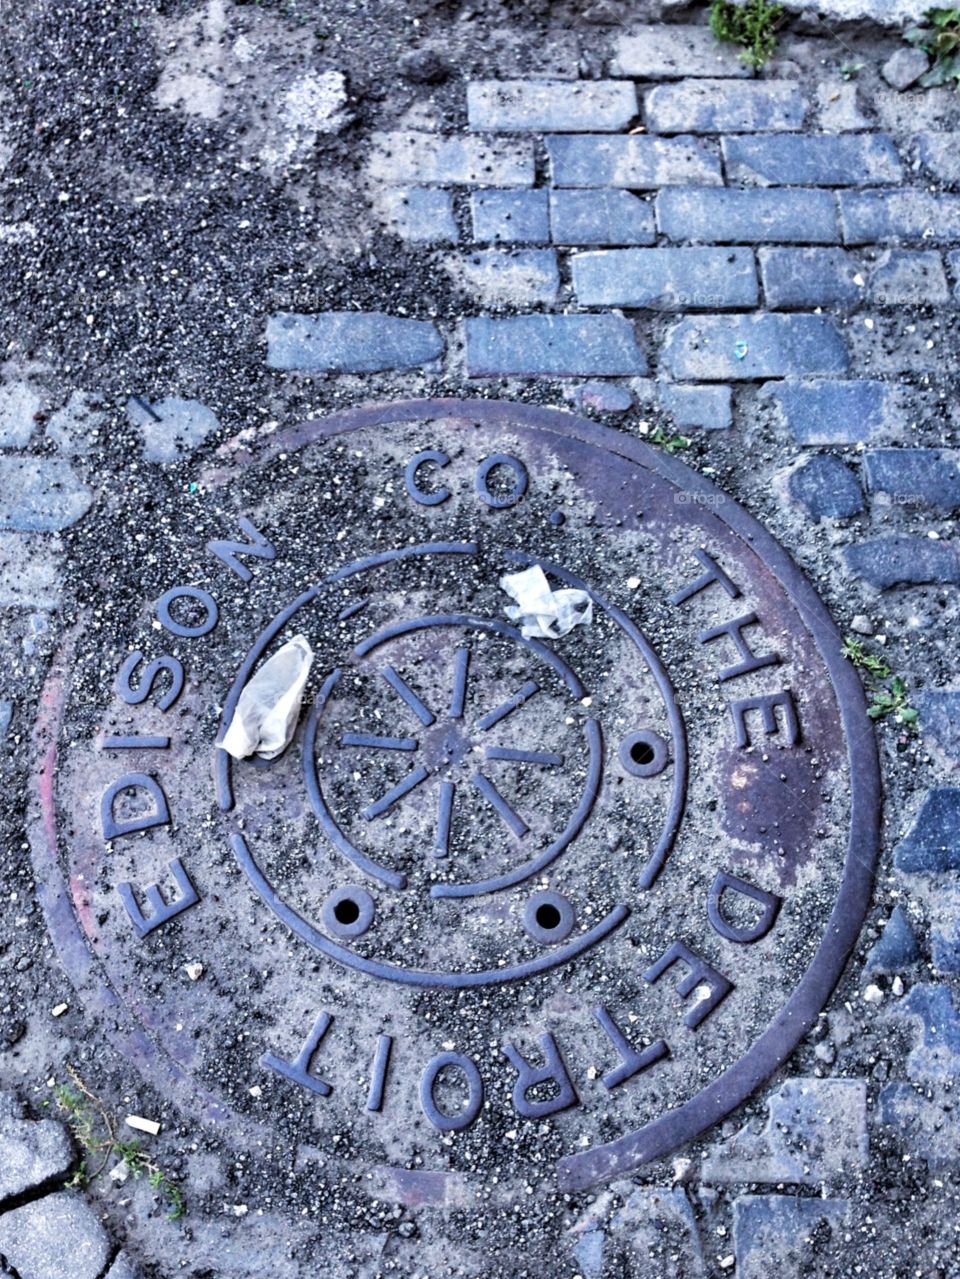 Detroit Manhole Cover. Downtown Detroit 